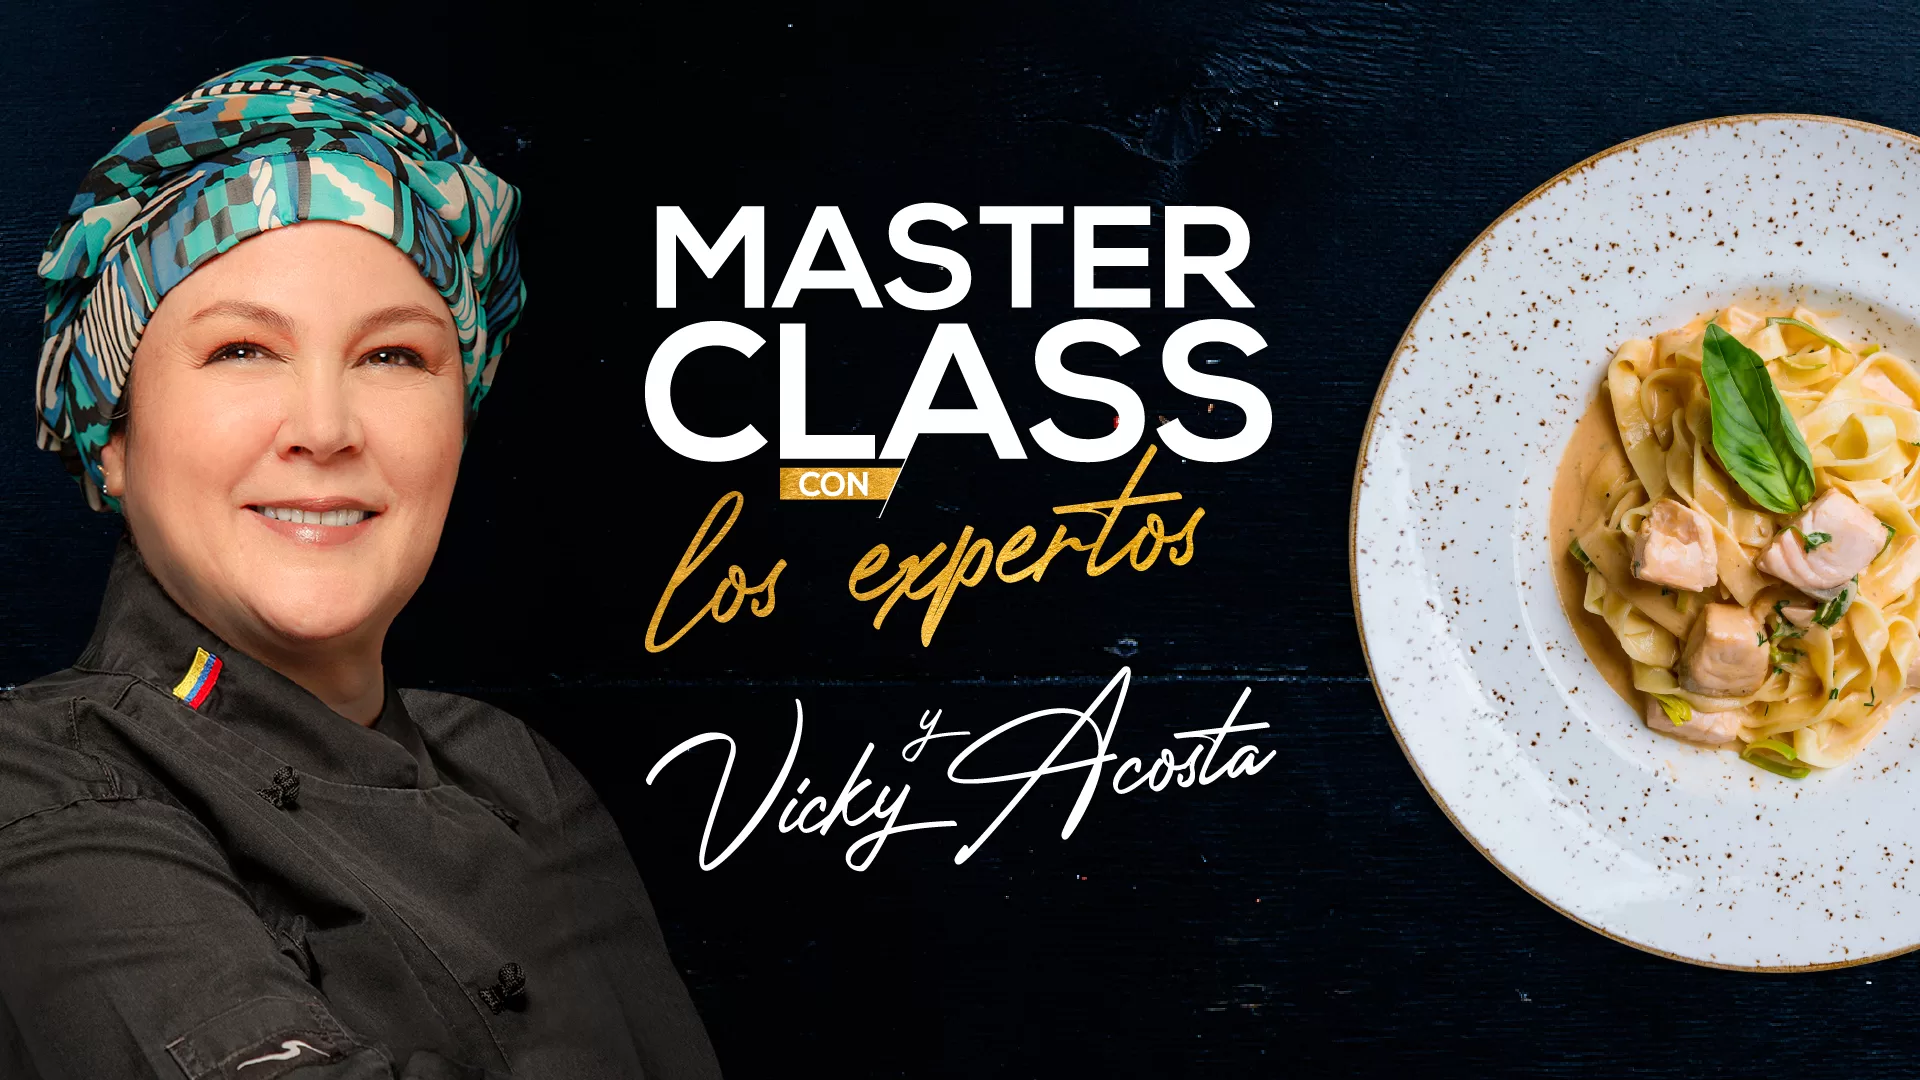 Masterclass marzo Vicky Acosta